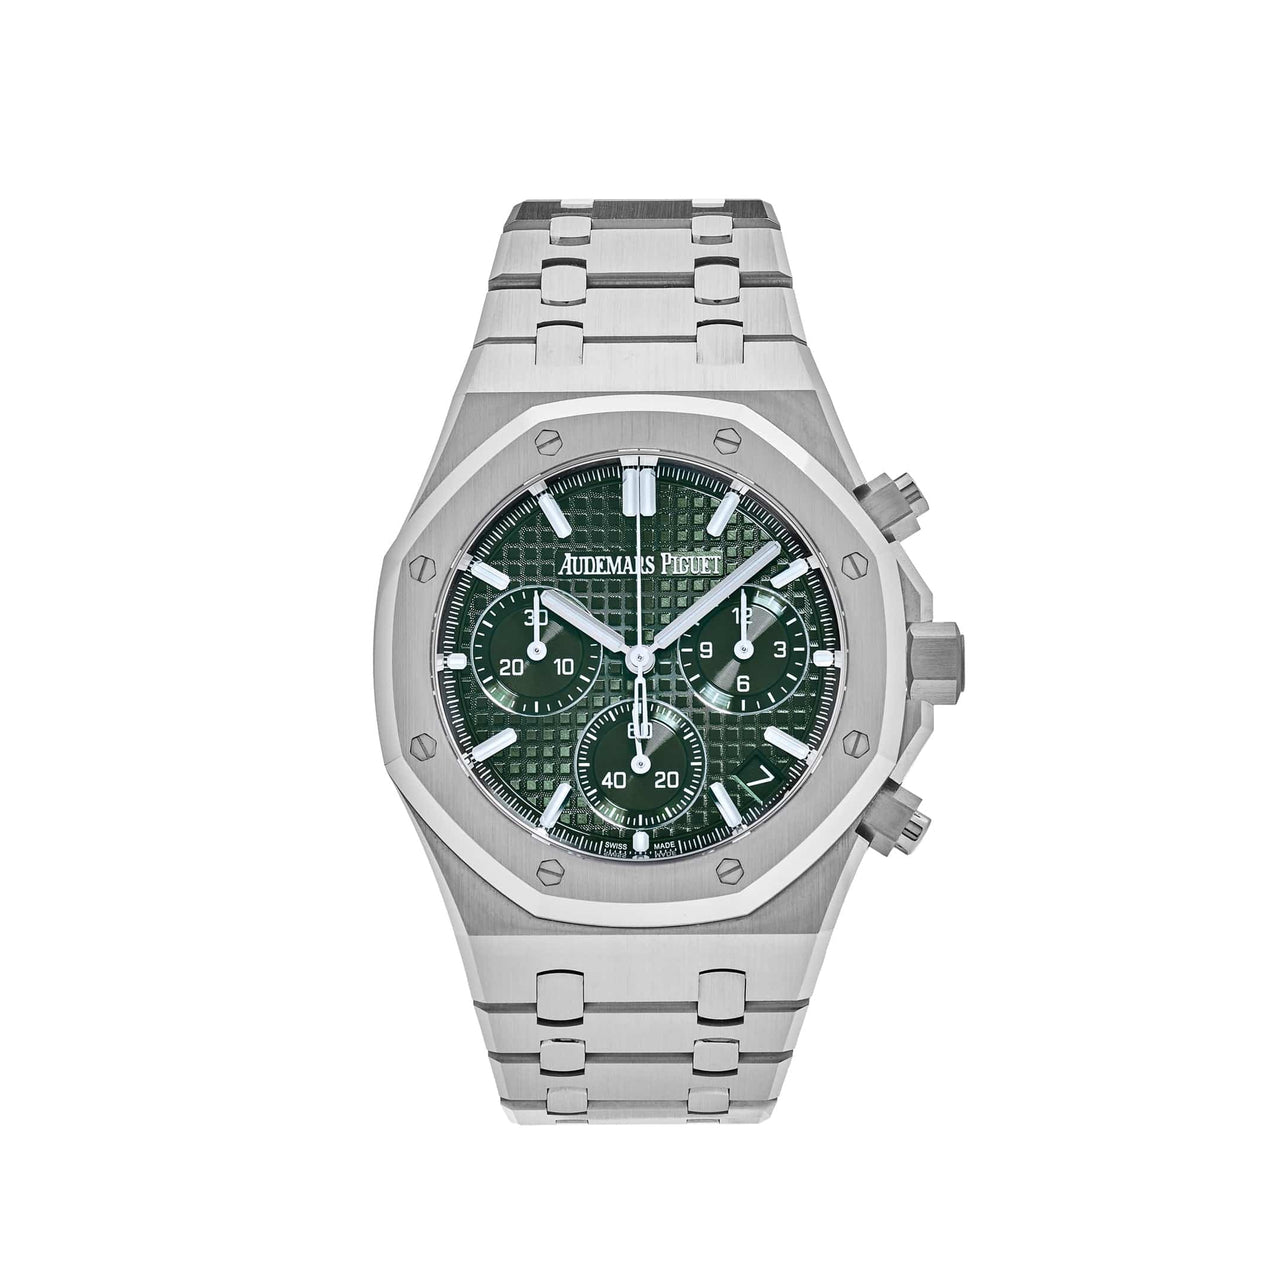 Audemars Piguet Flexes Classic Watch Co-Designed By Arnold Schwarzenegger -  Maxim